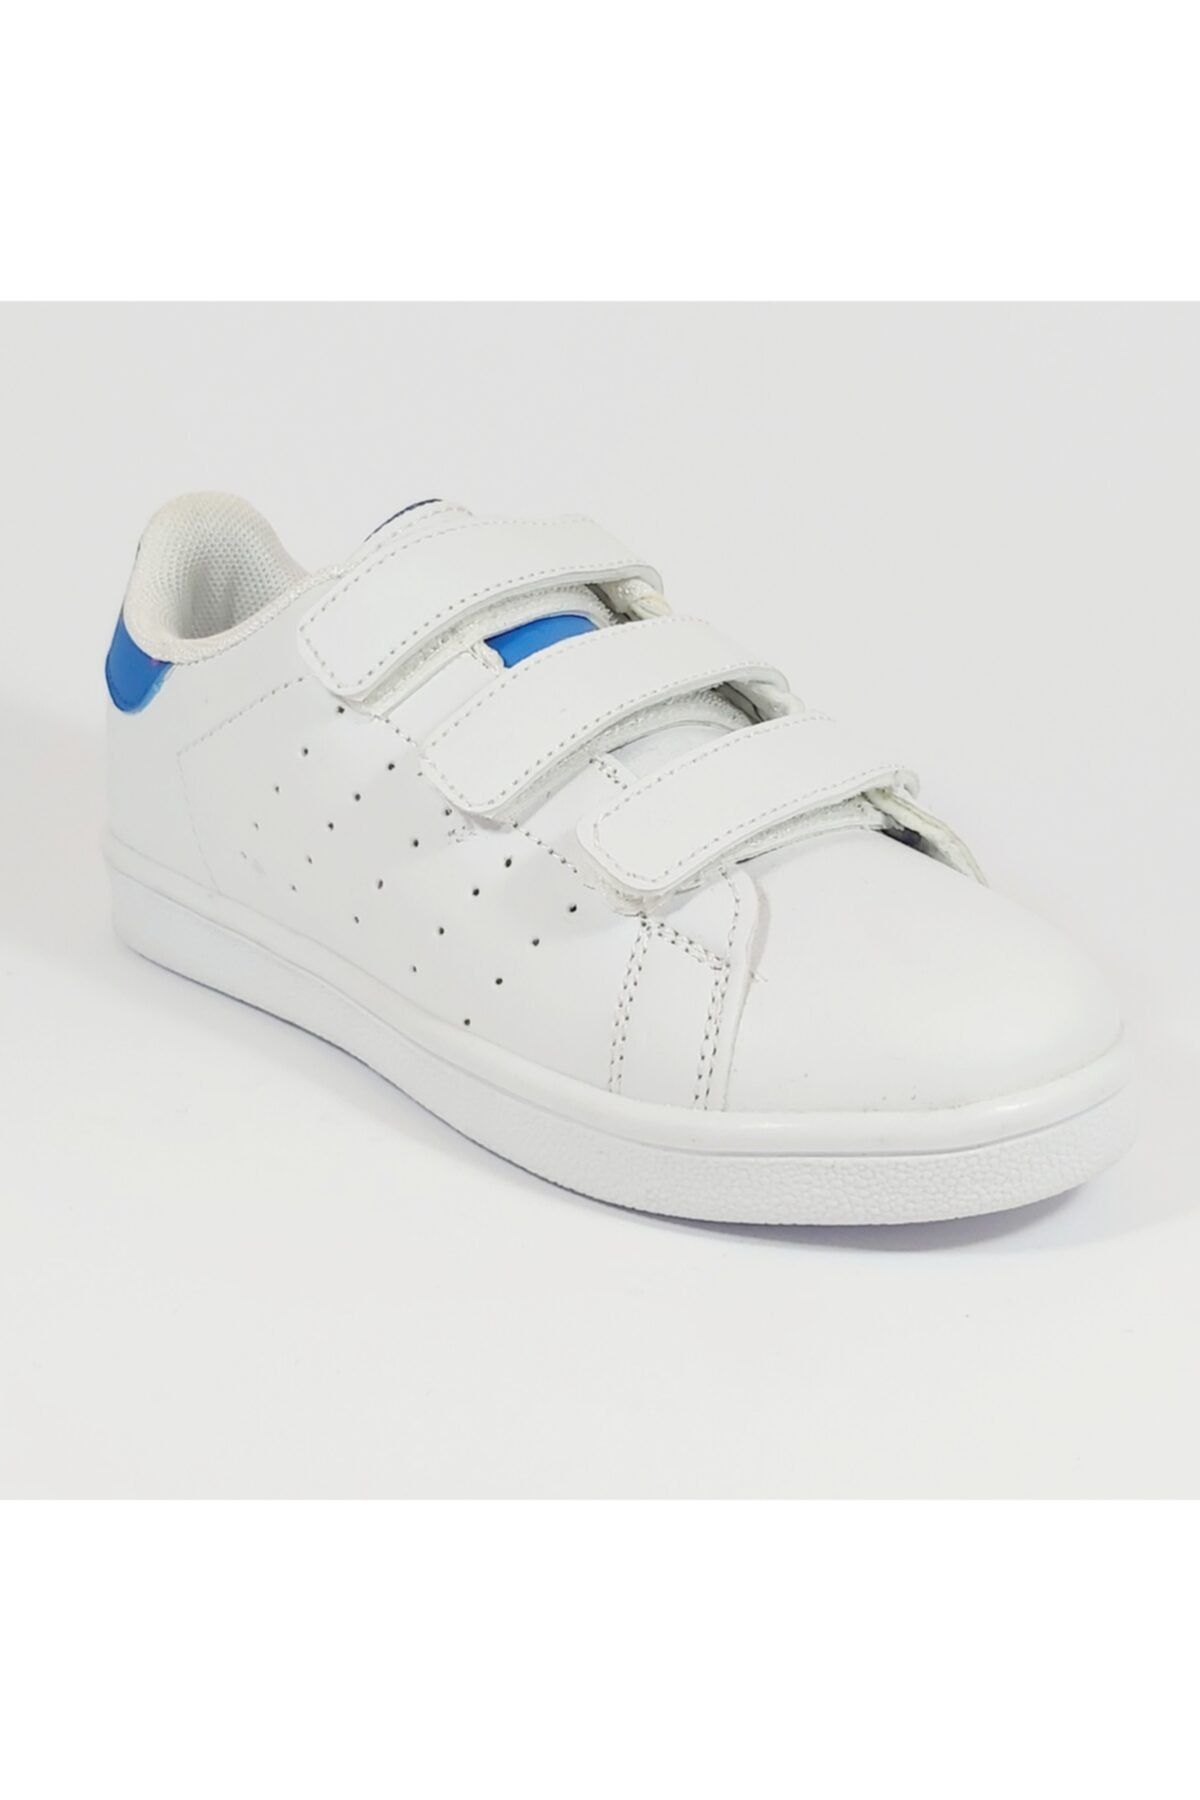 Minican Mini Can F212 Beyaz Mavi Stan Smith Spor Ayakkabısı